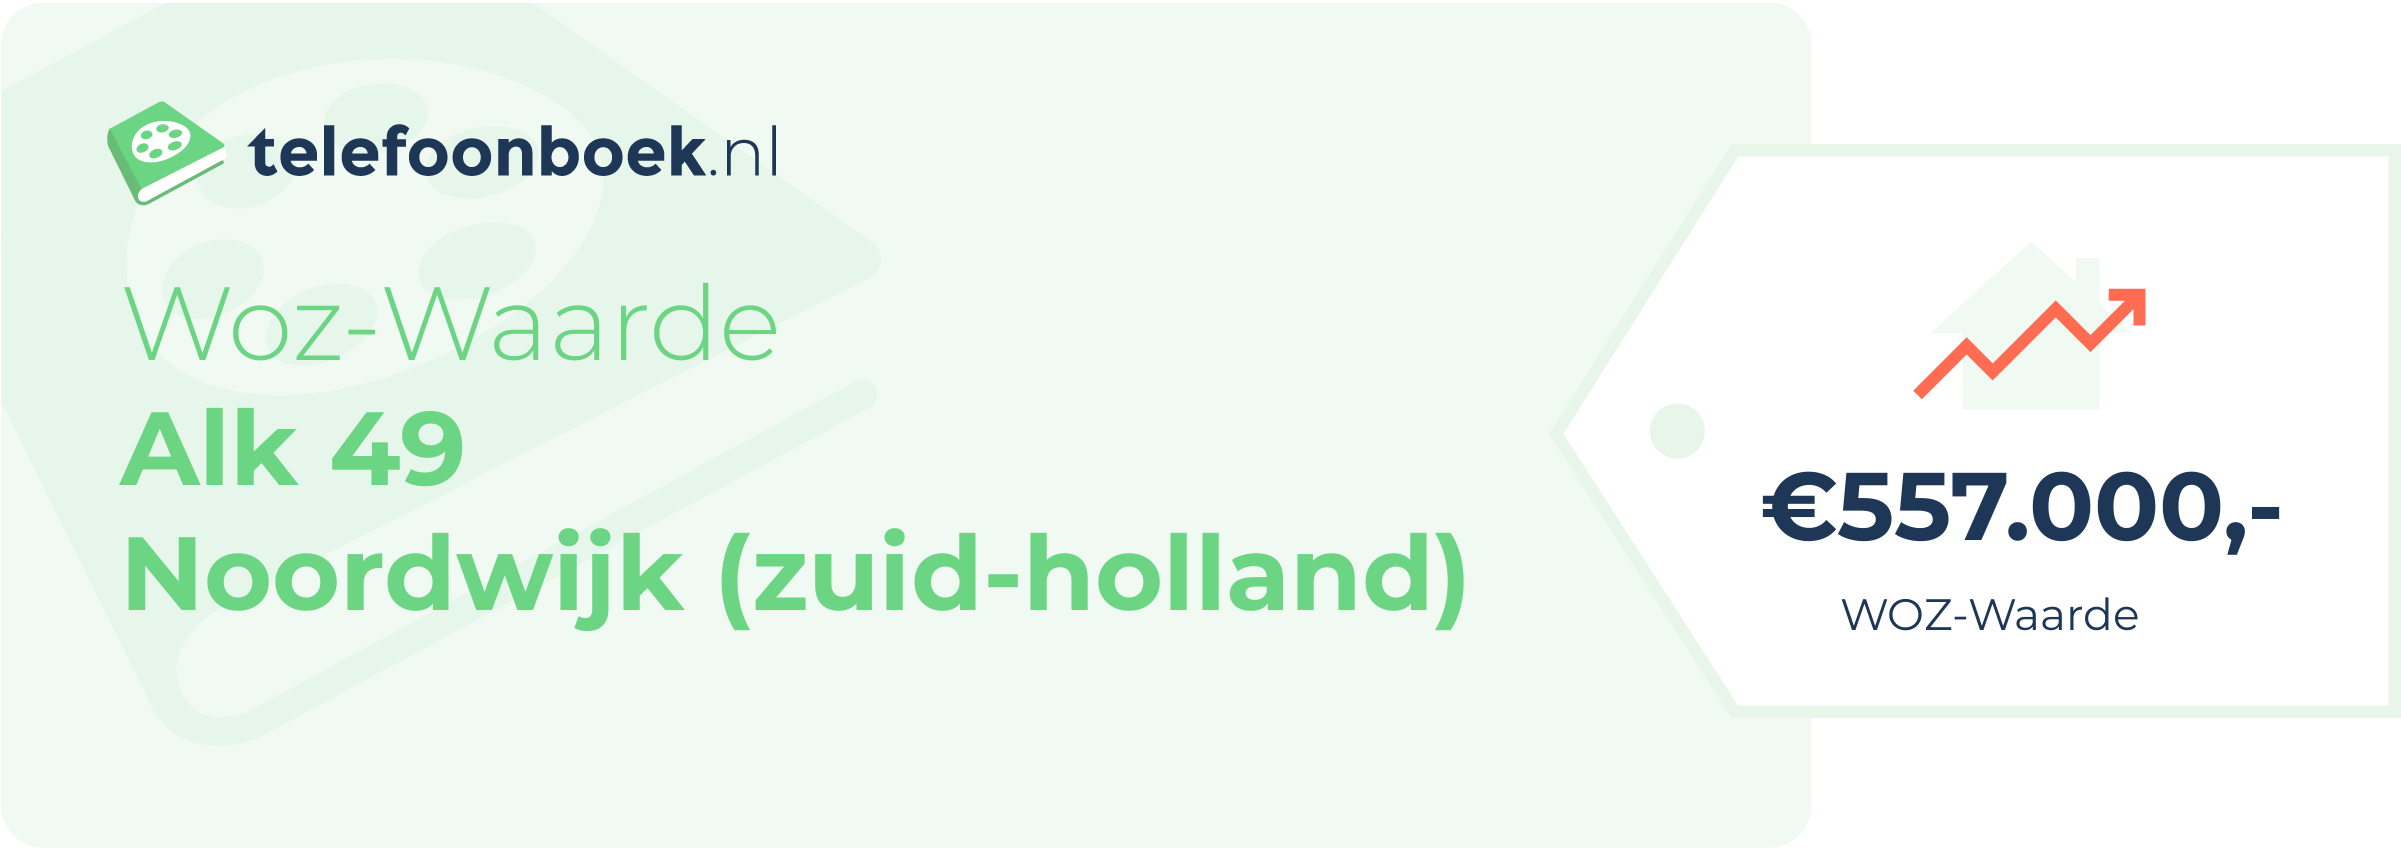 WOZ-waarde Alk 49 Noordwijk (Zuid-Holland)